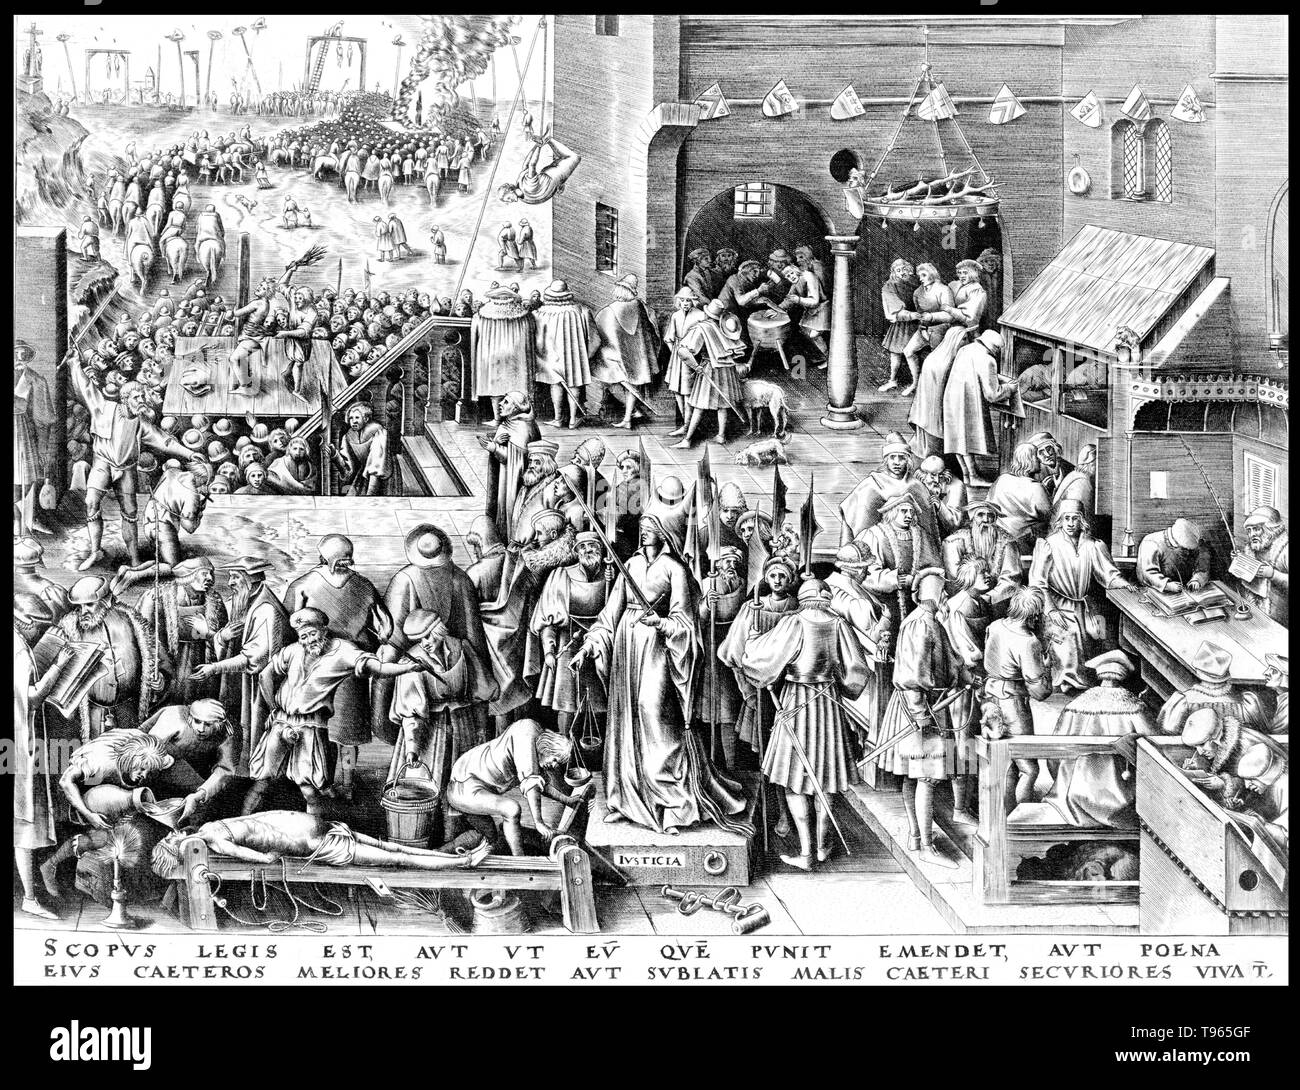 La giustizia si erge a occhi bendati come la gente intorno a lei vengono torturati. Il motto latino in fondo recita: "L'obiettivo della legge è sia attraverso la punizione per correggere colui che è punito, o per migliorare gli altri dal suo esempio, o per proteggere la generalità vincendo il male." Pieter Bruegel il Vecchio (1525/1530 - 9 settembre 1569) è stato il più importante pittore e incisore olandese e fiamminga movimento rinascimentale. Foto Stock